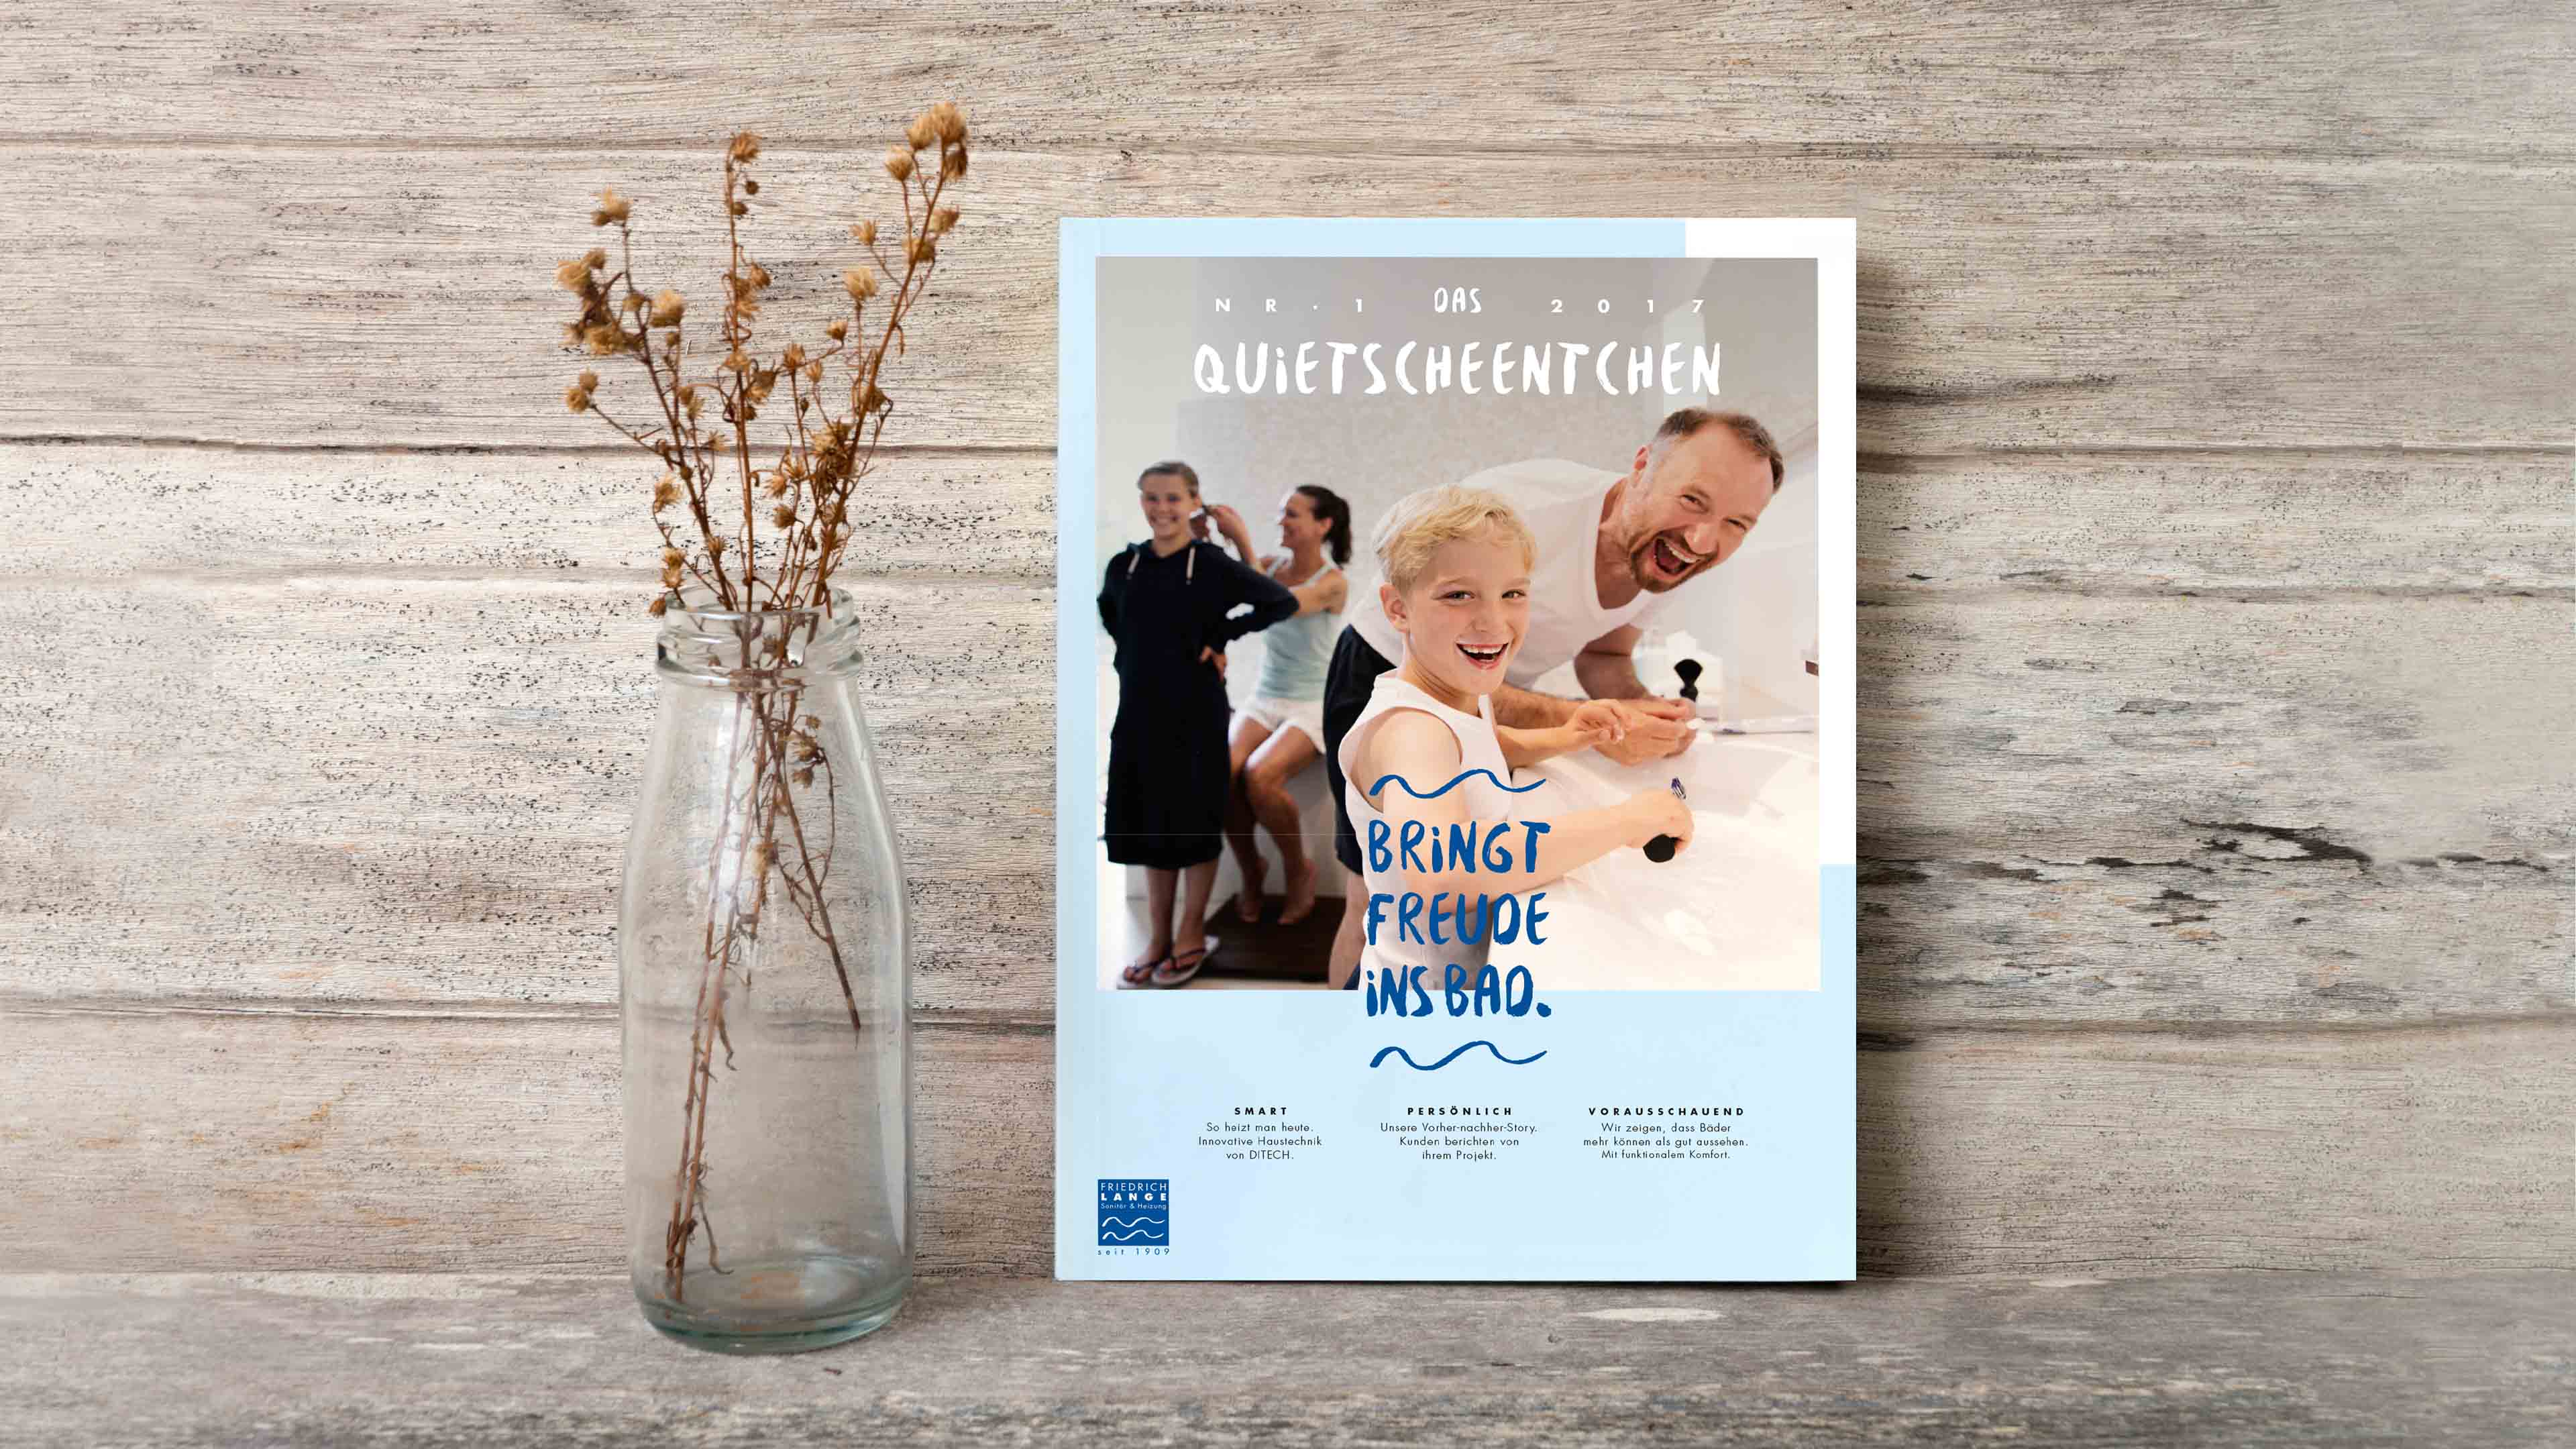 Titelseite "Quietscheentchen 2017" zeigt fröhliche Familie im Bad